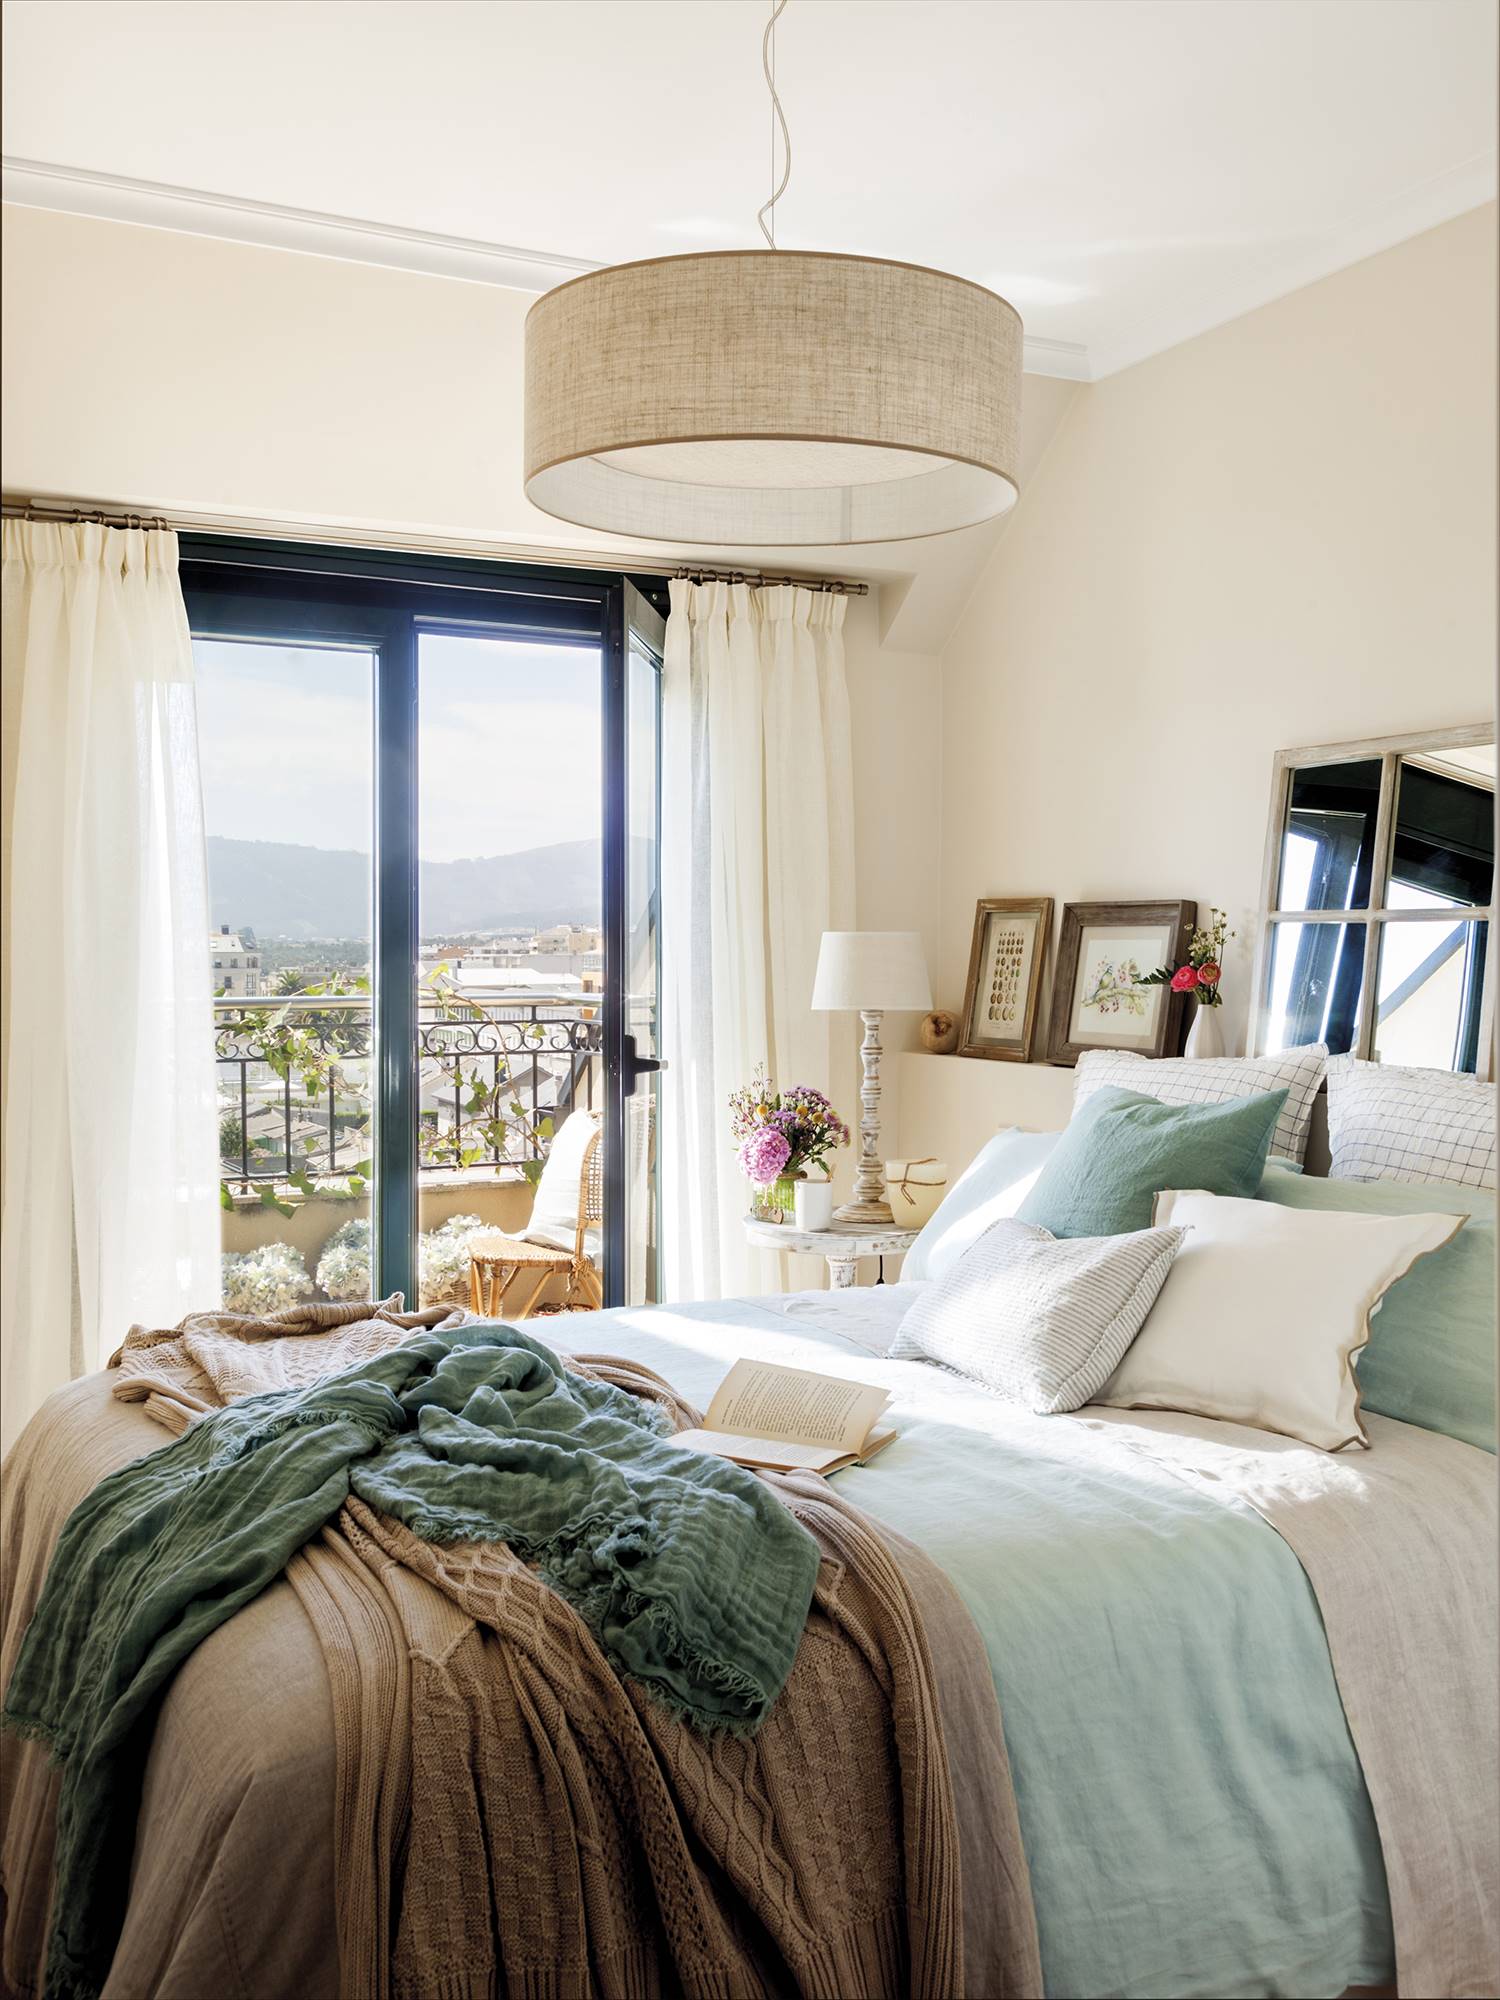 Dormitorio con terraza, cabecero de obra y ropa de cama en tonos beige y azulados